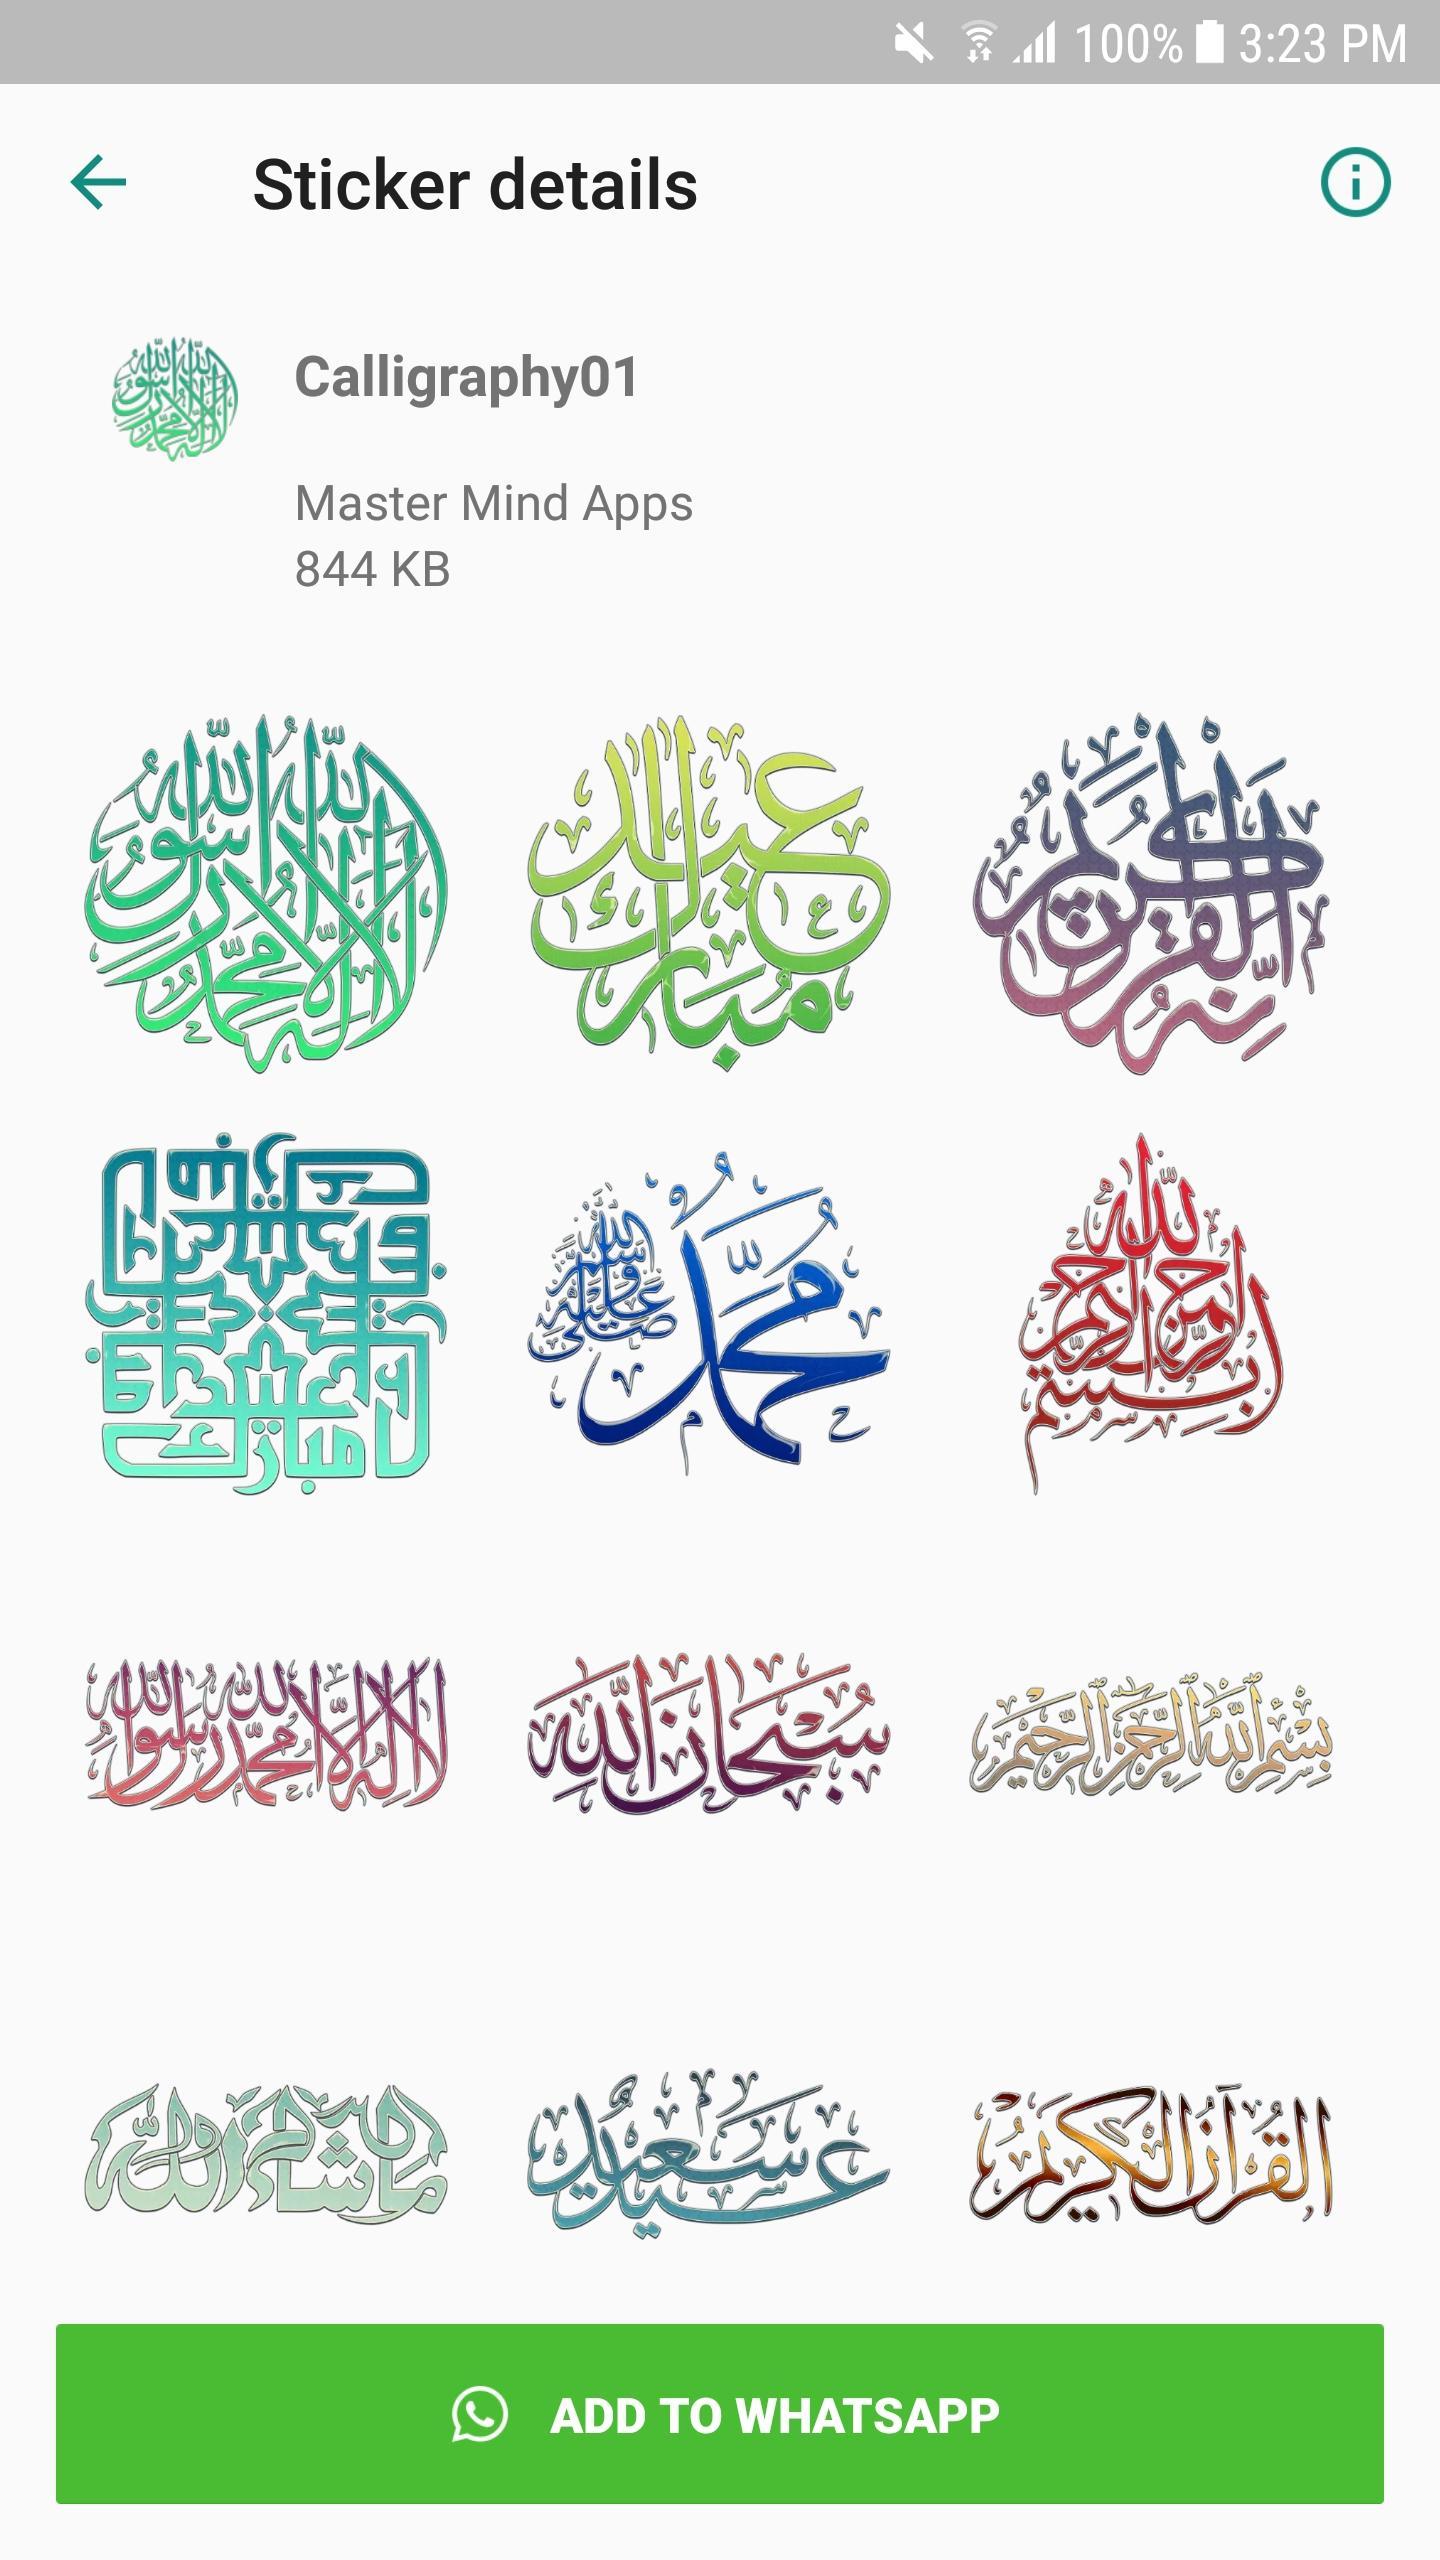 ملصقات إسلامية و صور إسلامية - أدعية وآيات قرآنية for Android - APK Download